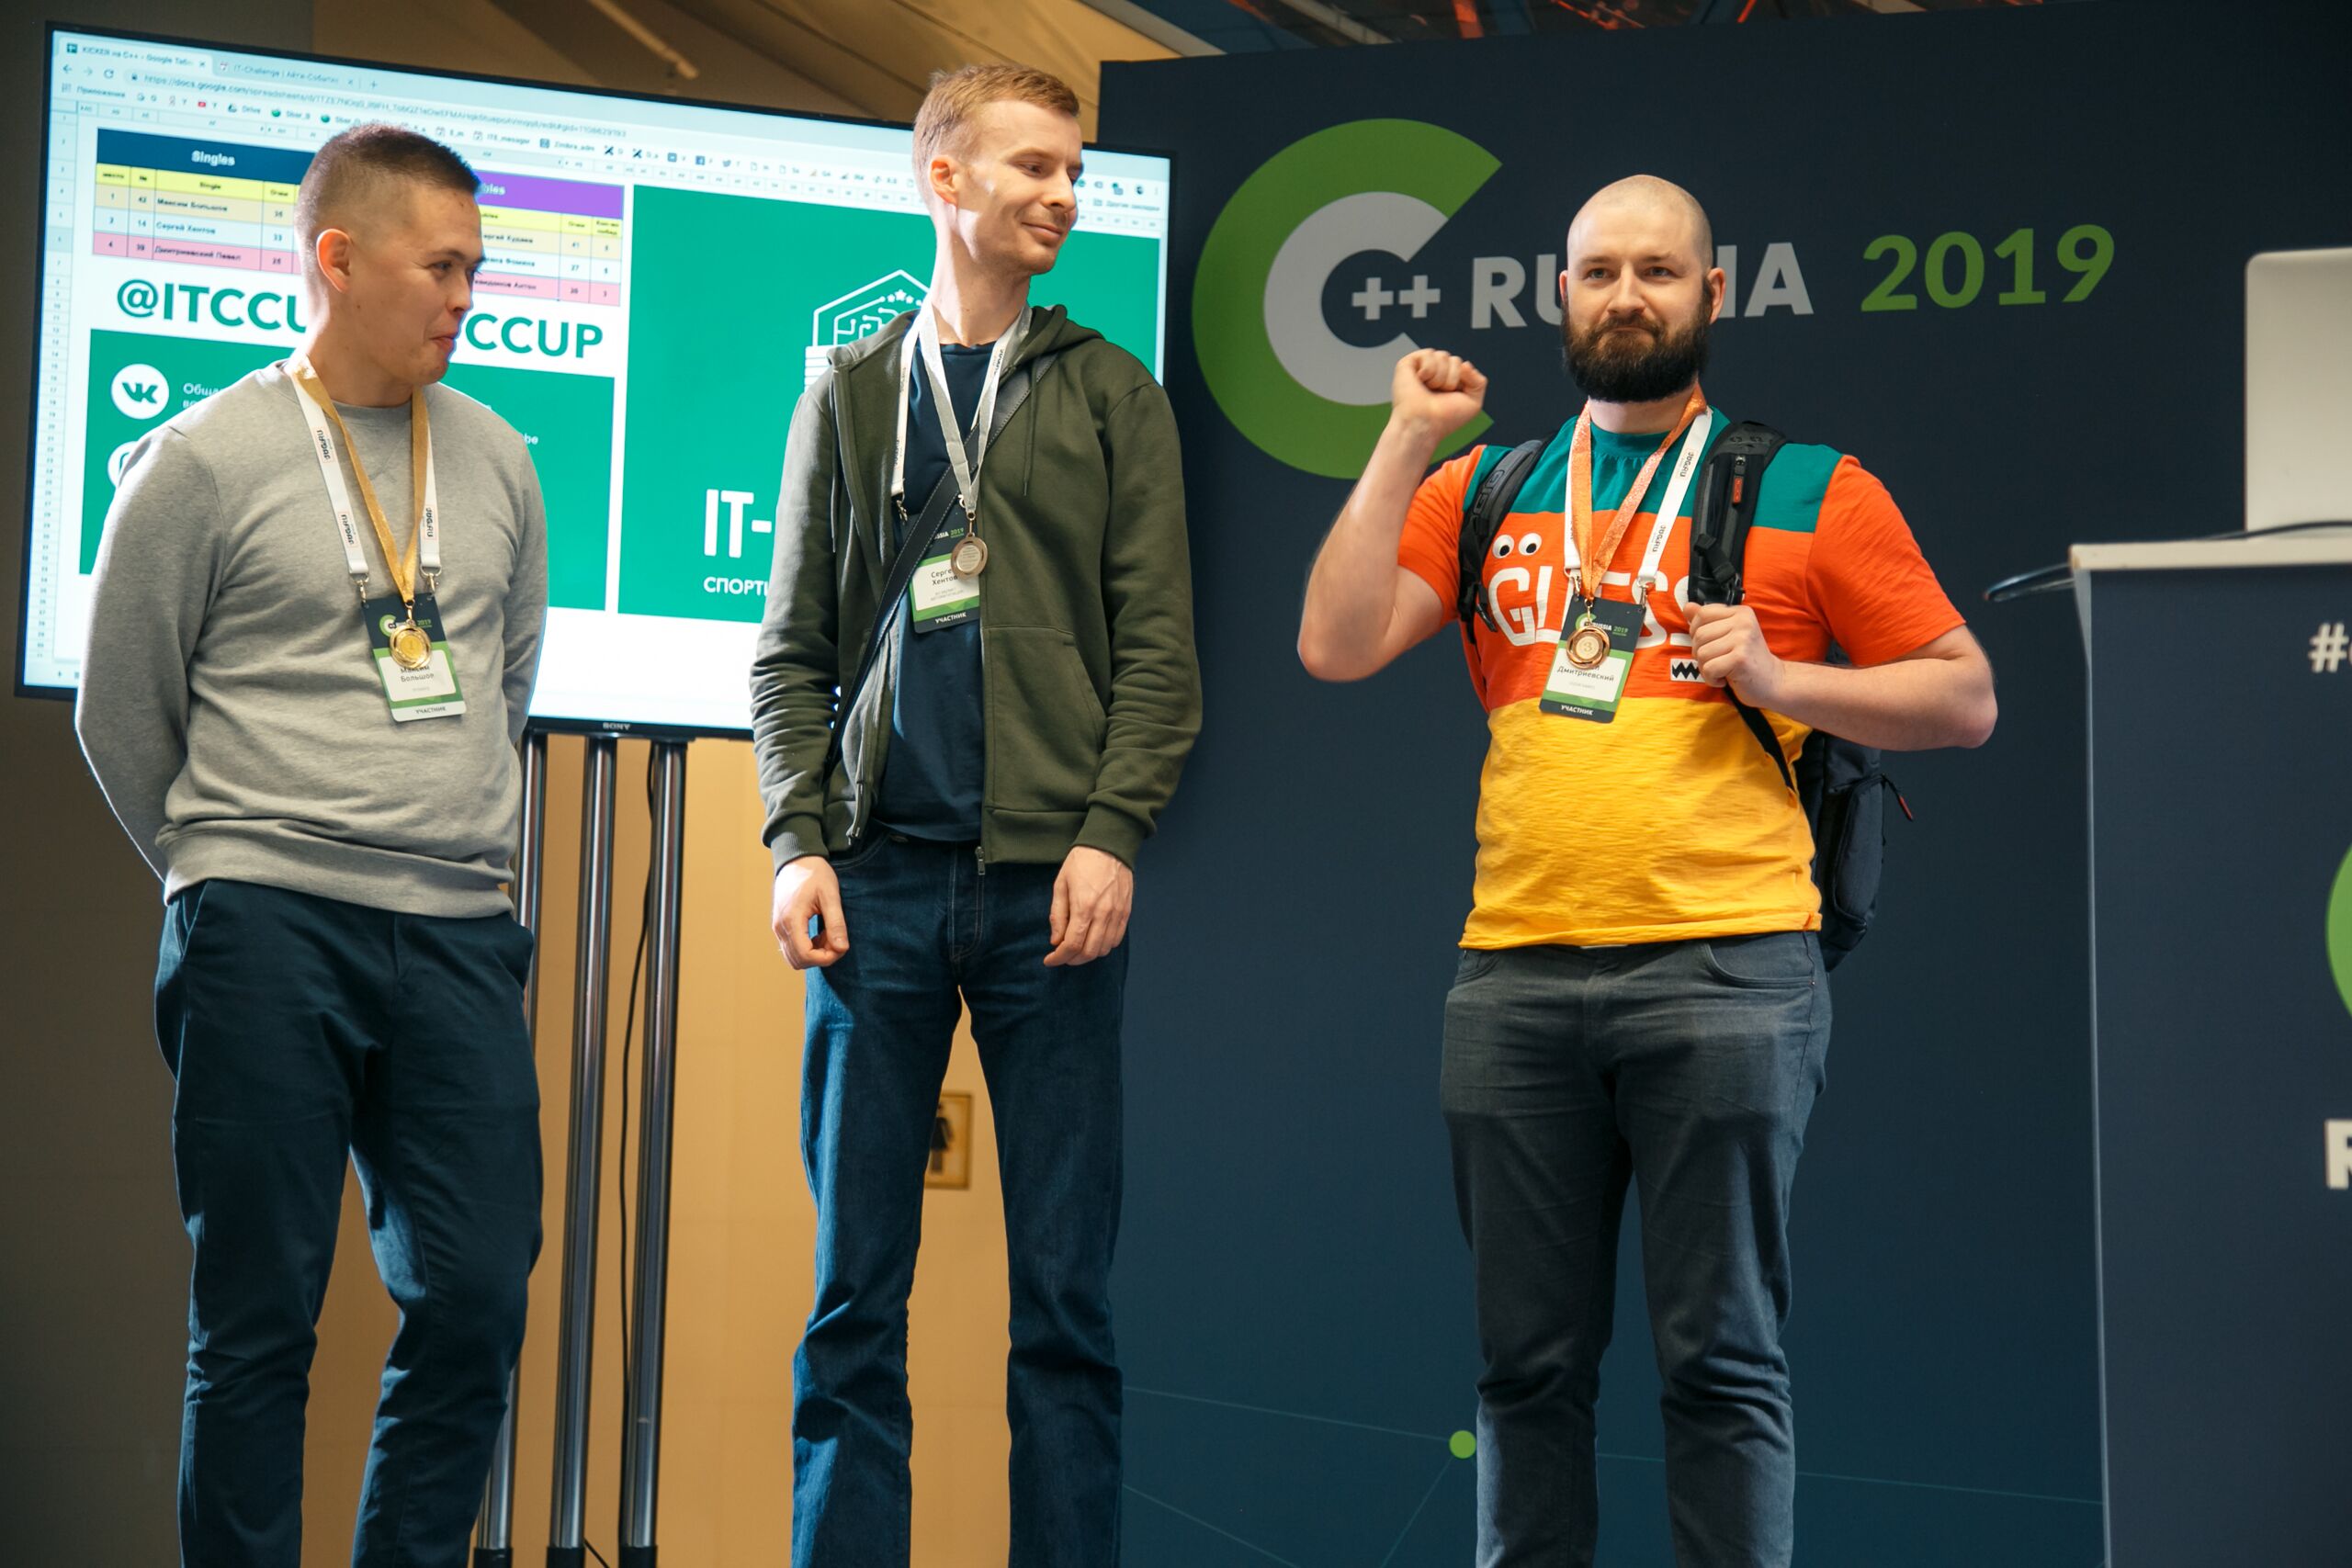 C++ Russia 2019. Небольшой отчет с места событий и анонс следующей конференции в Санкт-Петербурге - 22